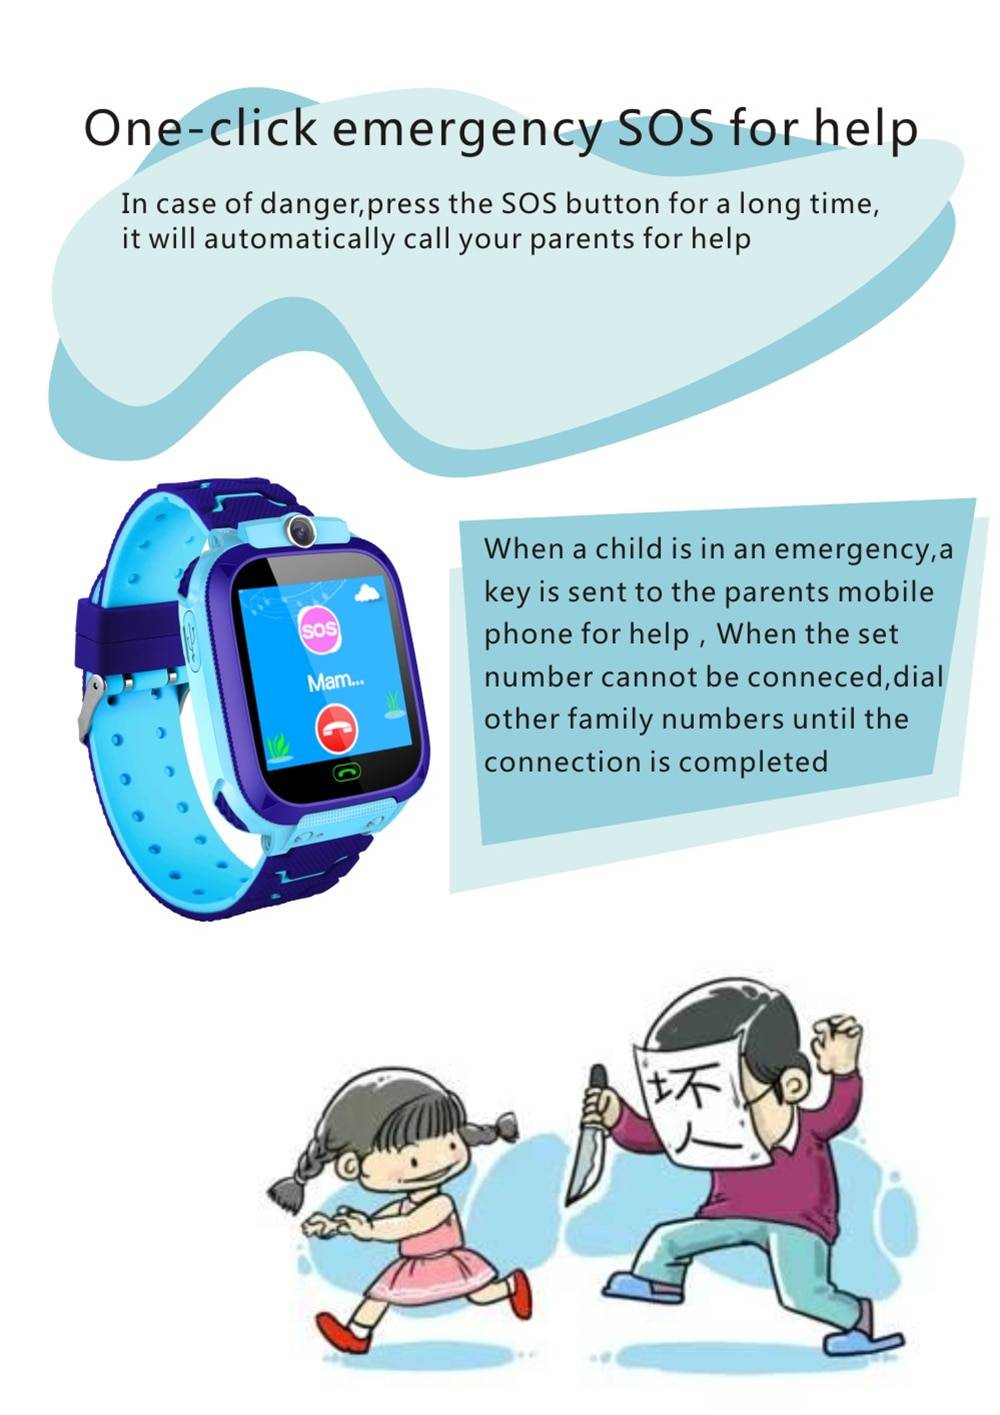 Kid's Waterproof Anti-lost Smart Watch